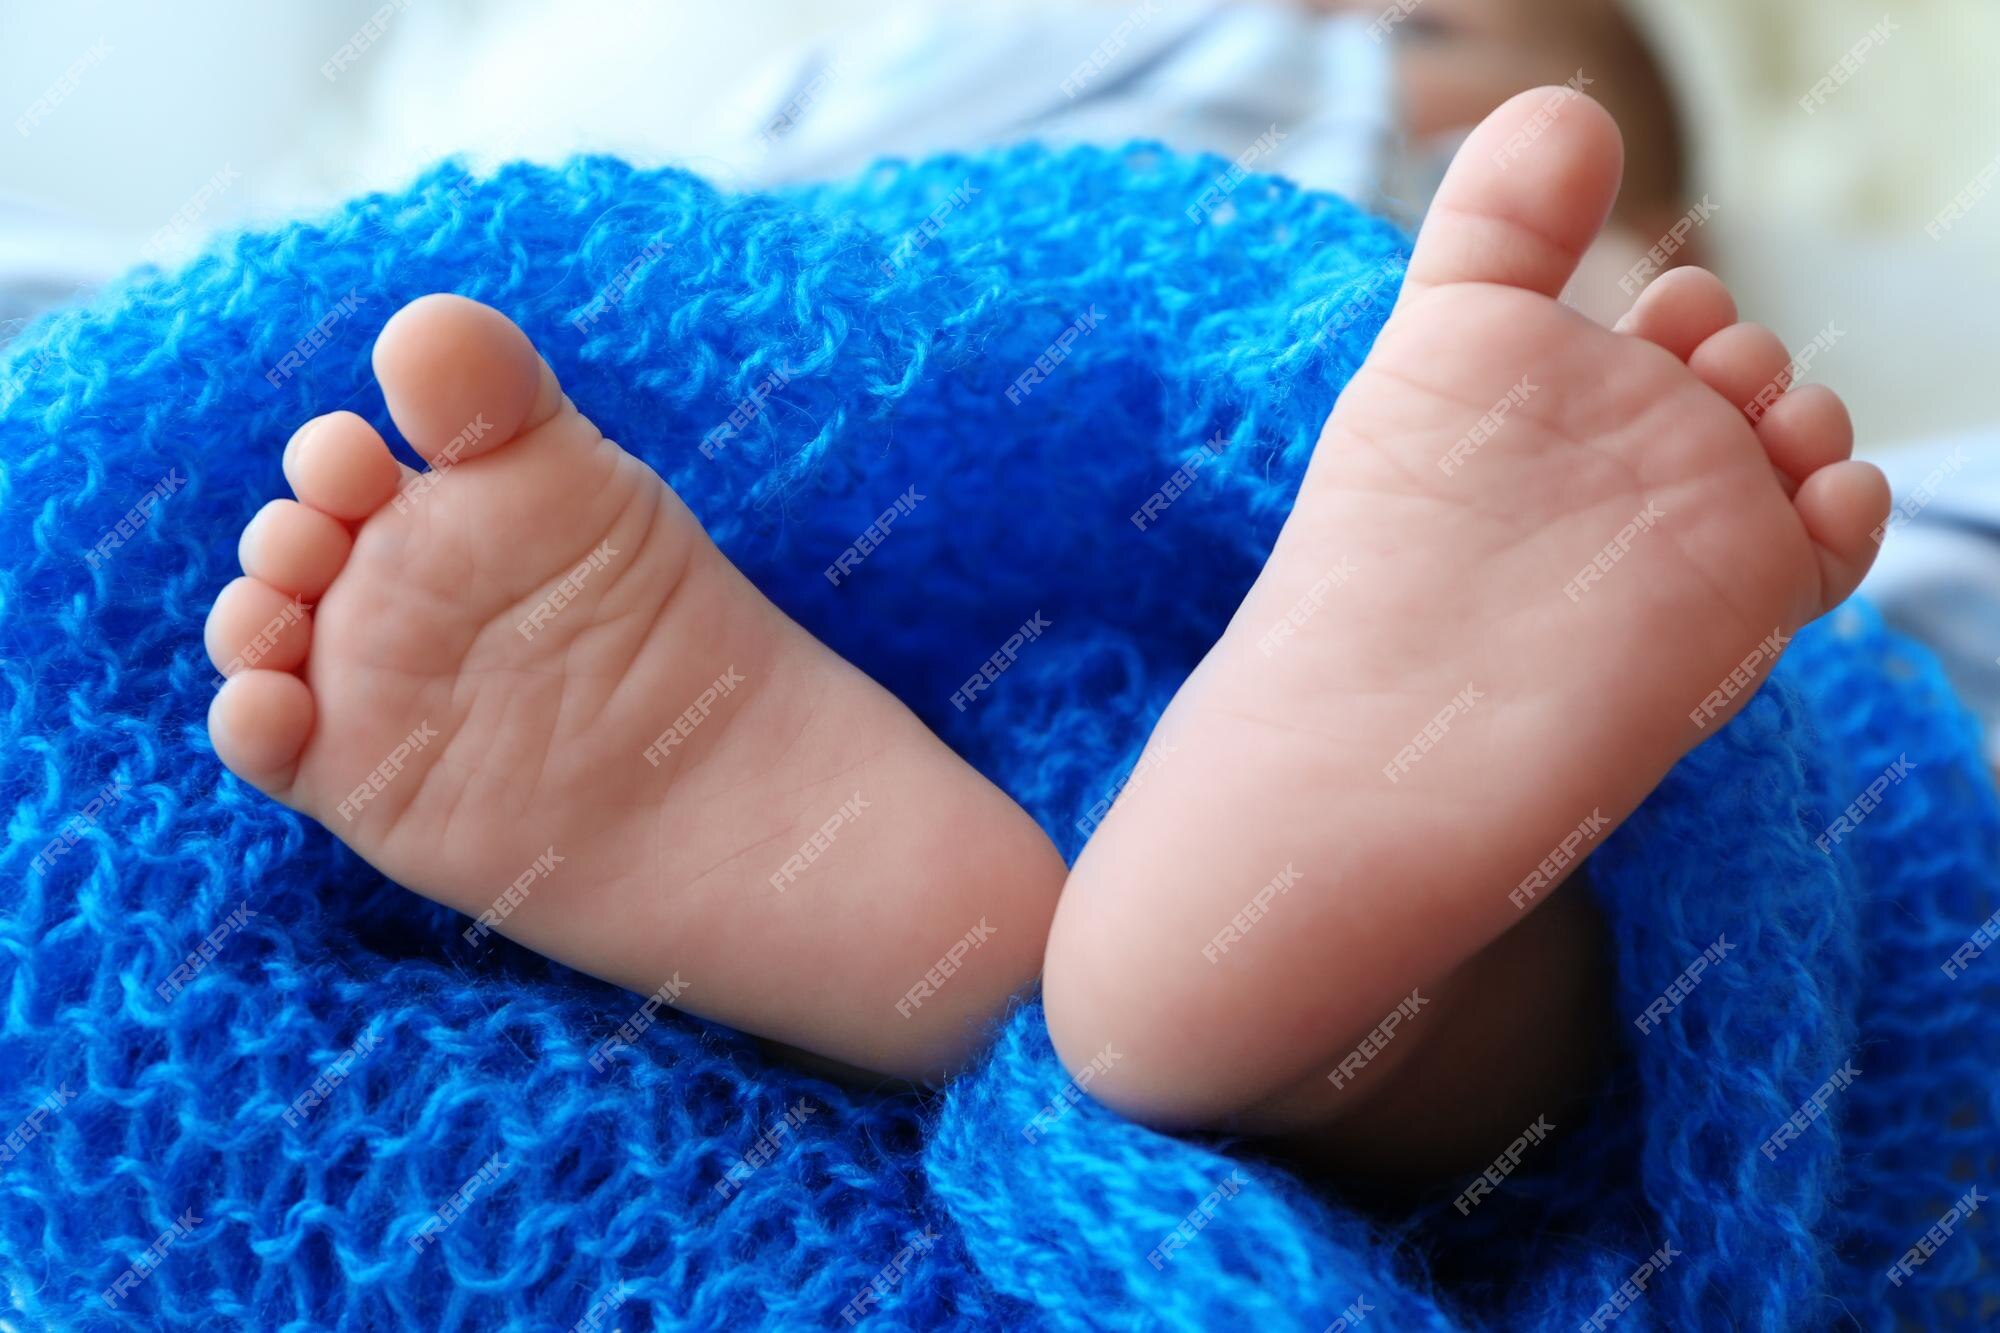 bewondering Sandalen Aktentas Voeten van schattige baby bedekt met blauwe deken close-up bekijken |  Premium Foto